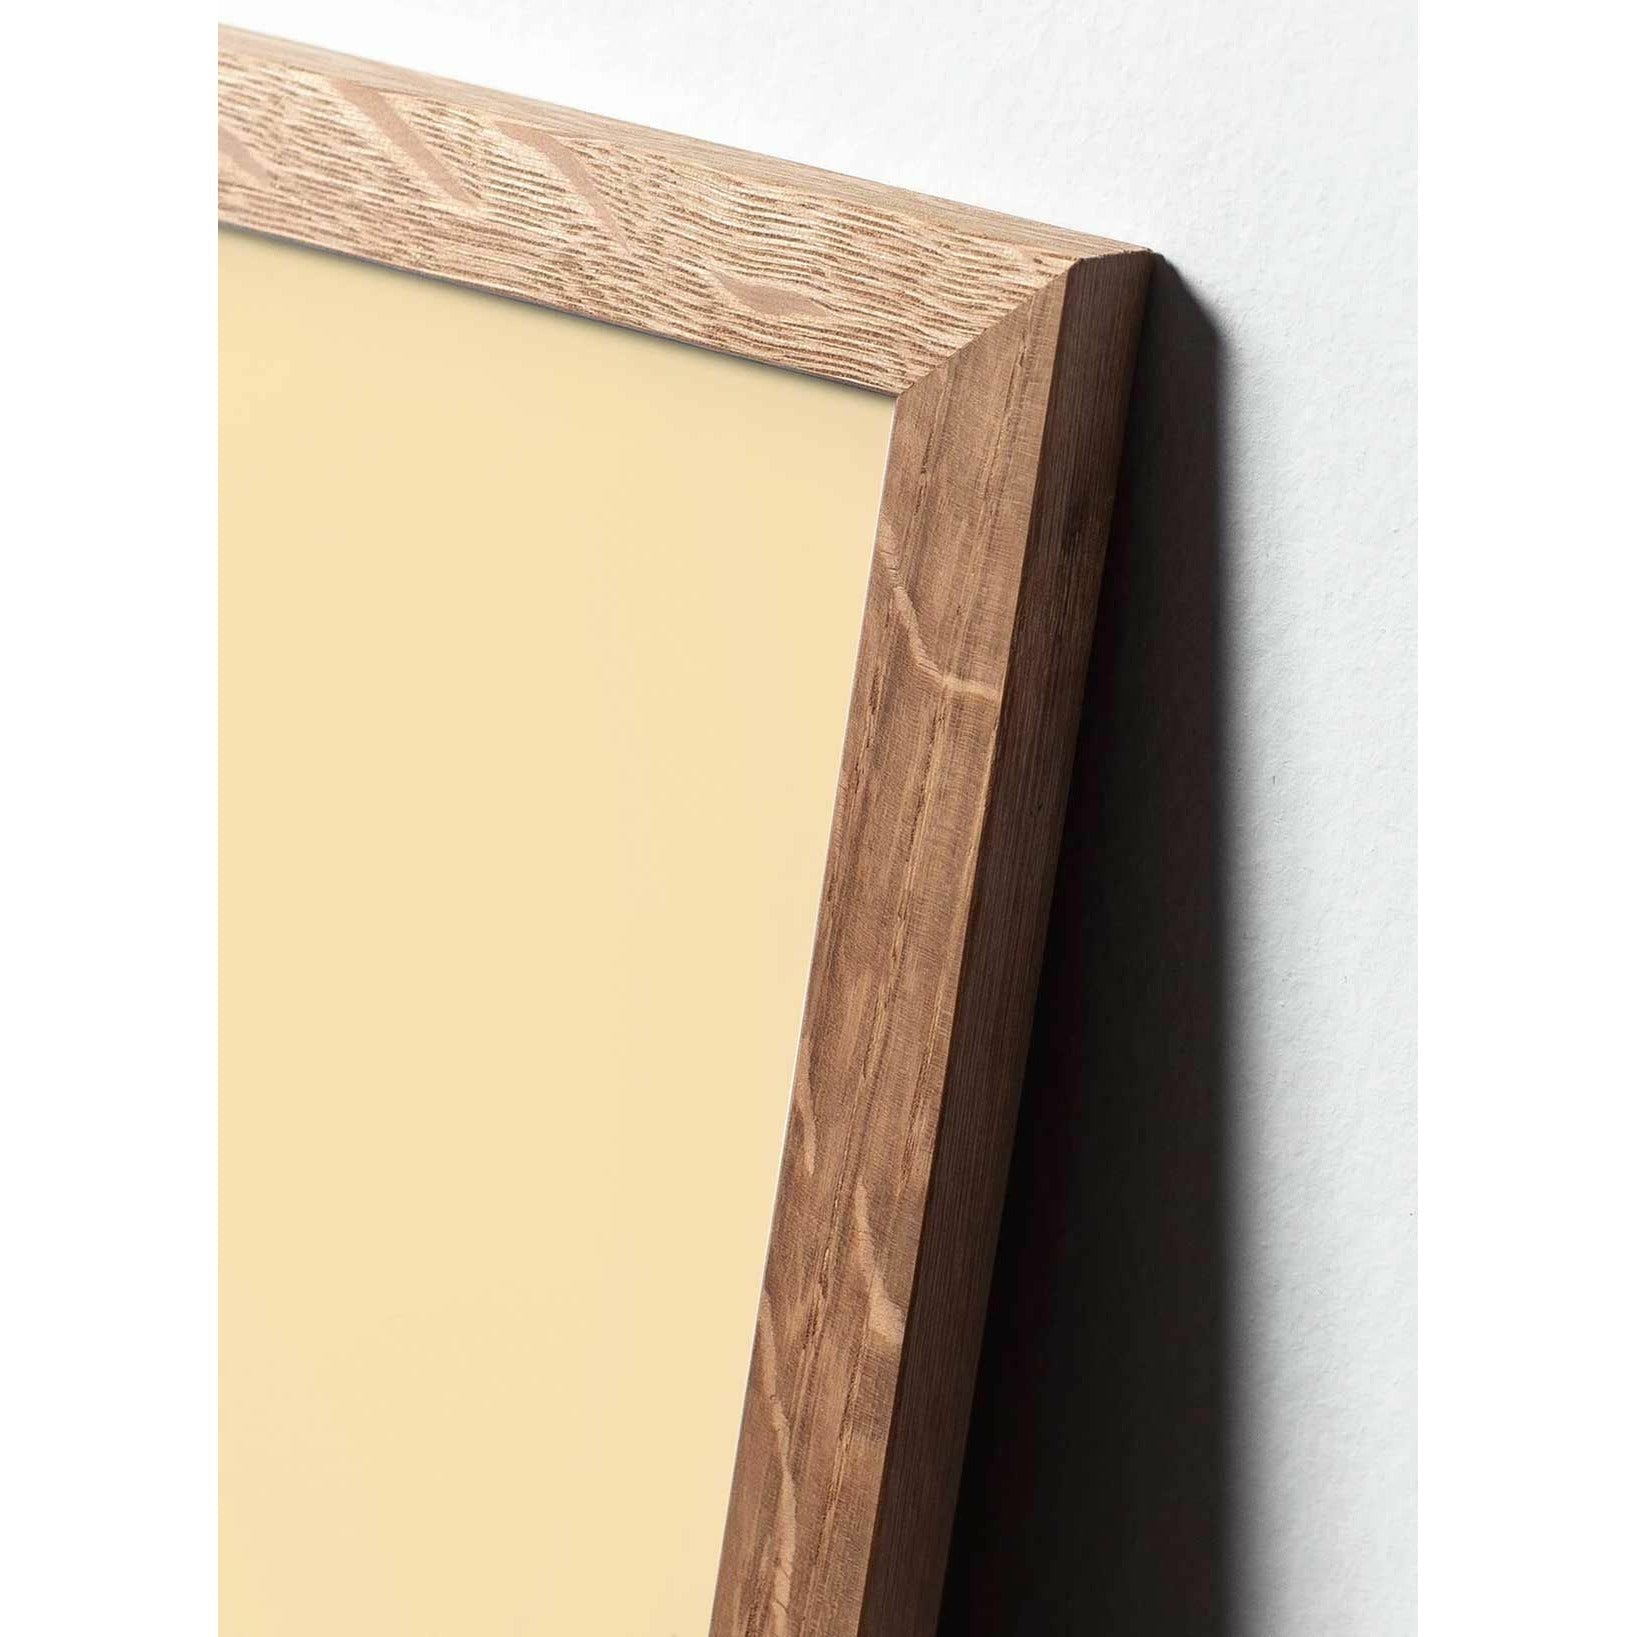 Póster de línea de hormigas de creación, marco hecho de madera clara A5, fondo blanco